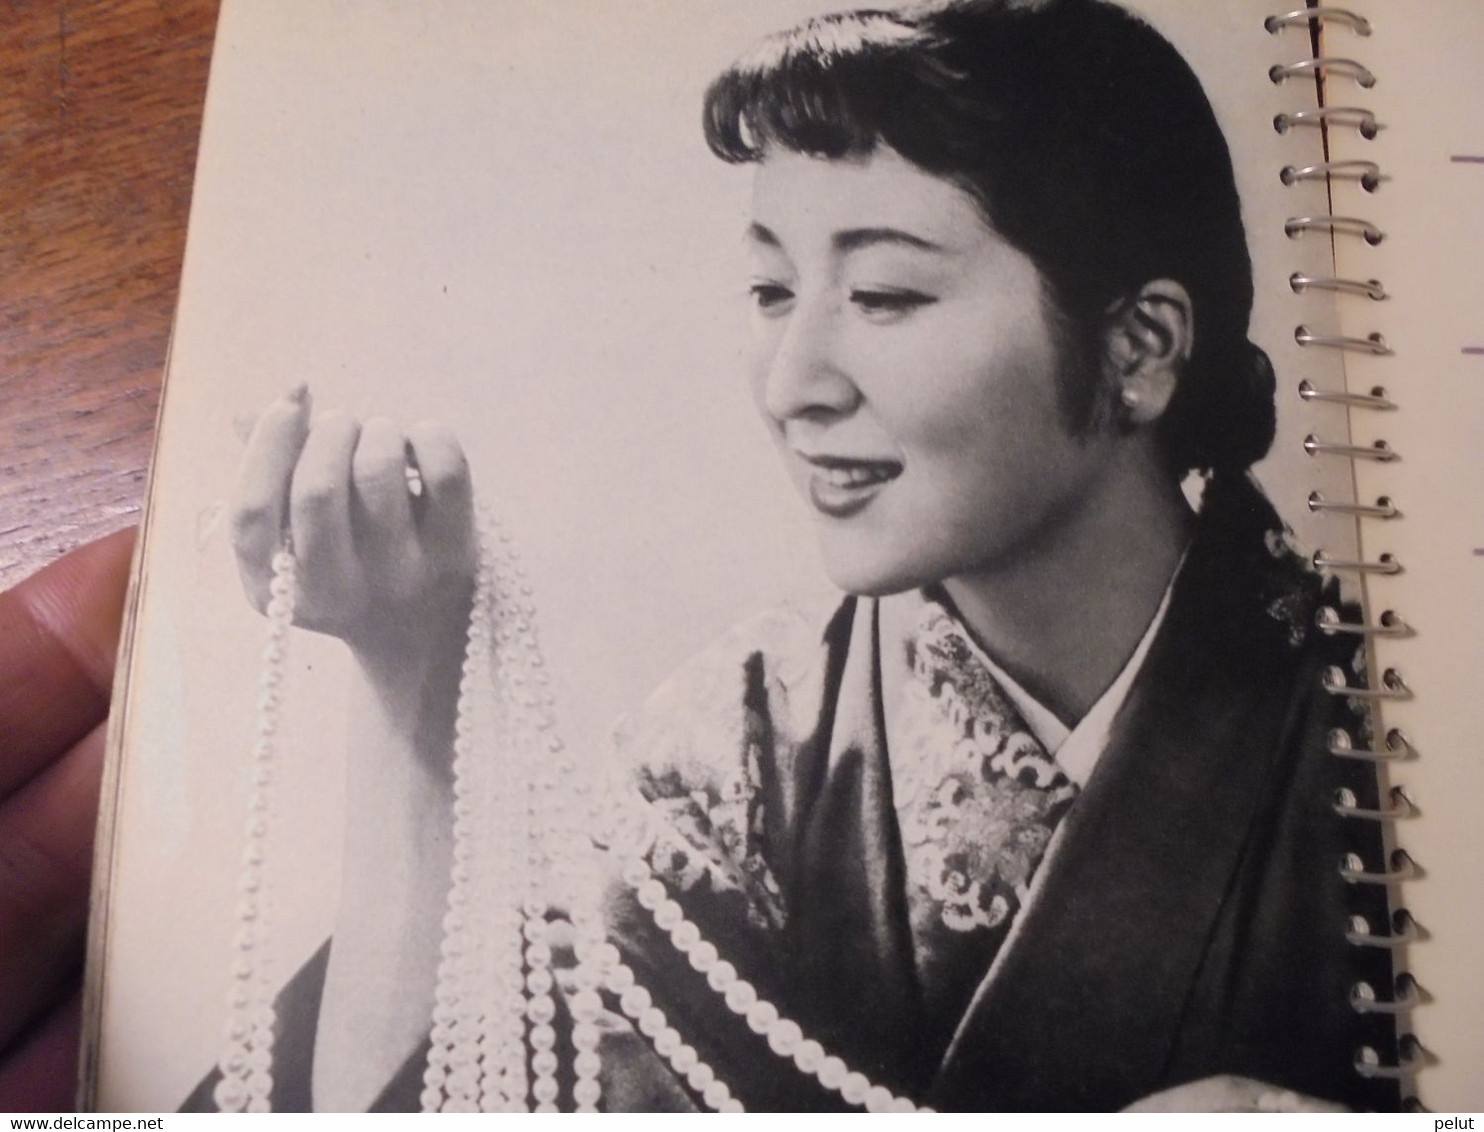 superbe calendrier-agenda Japon 1956 avec très belles photographies